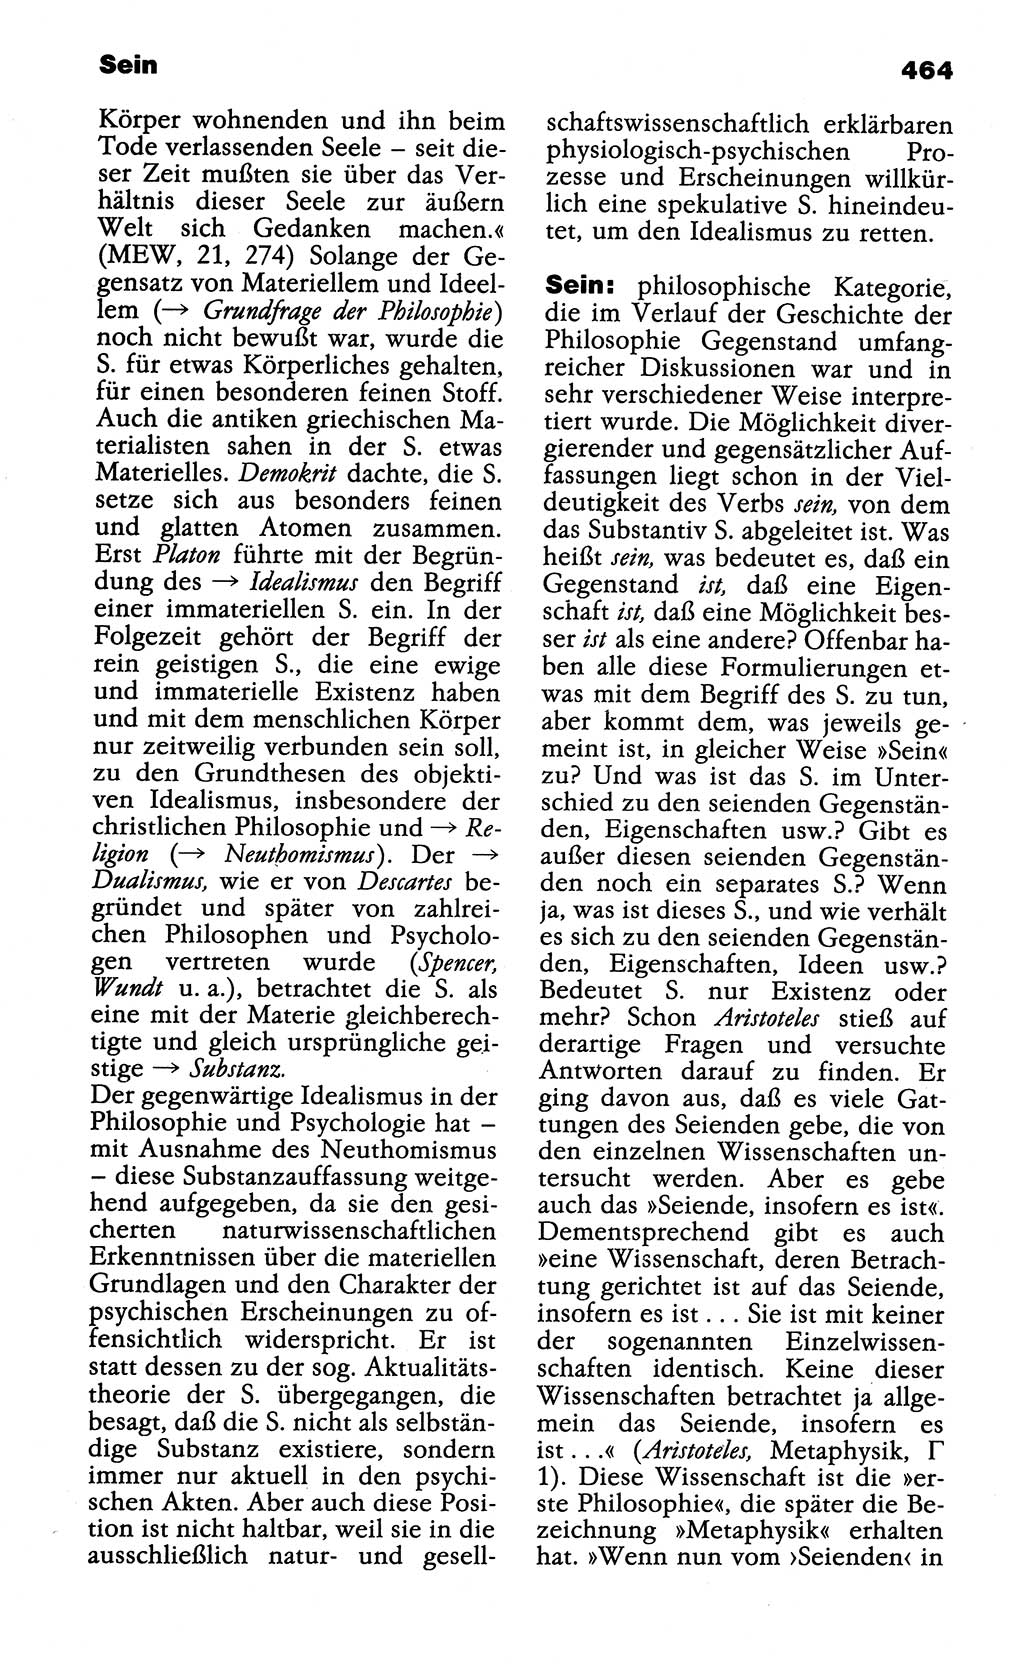 Wörterbuch der marxistisch-leninistischen Philosophie [Deutsche Demokratische Republik (DDR)] 1985, Seite 464 (Wb. ML Phil. DDR 1985, S. 464)